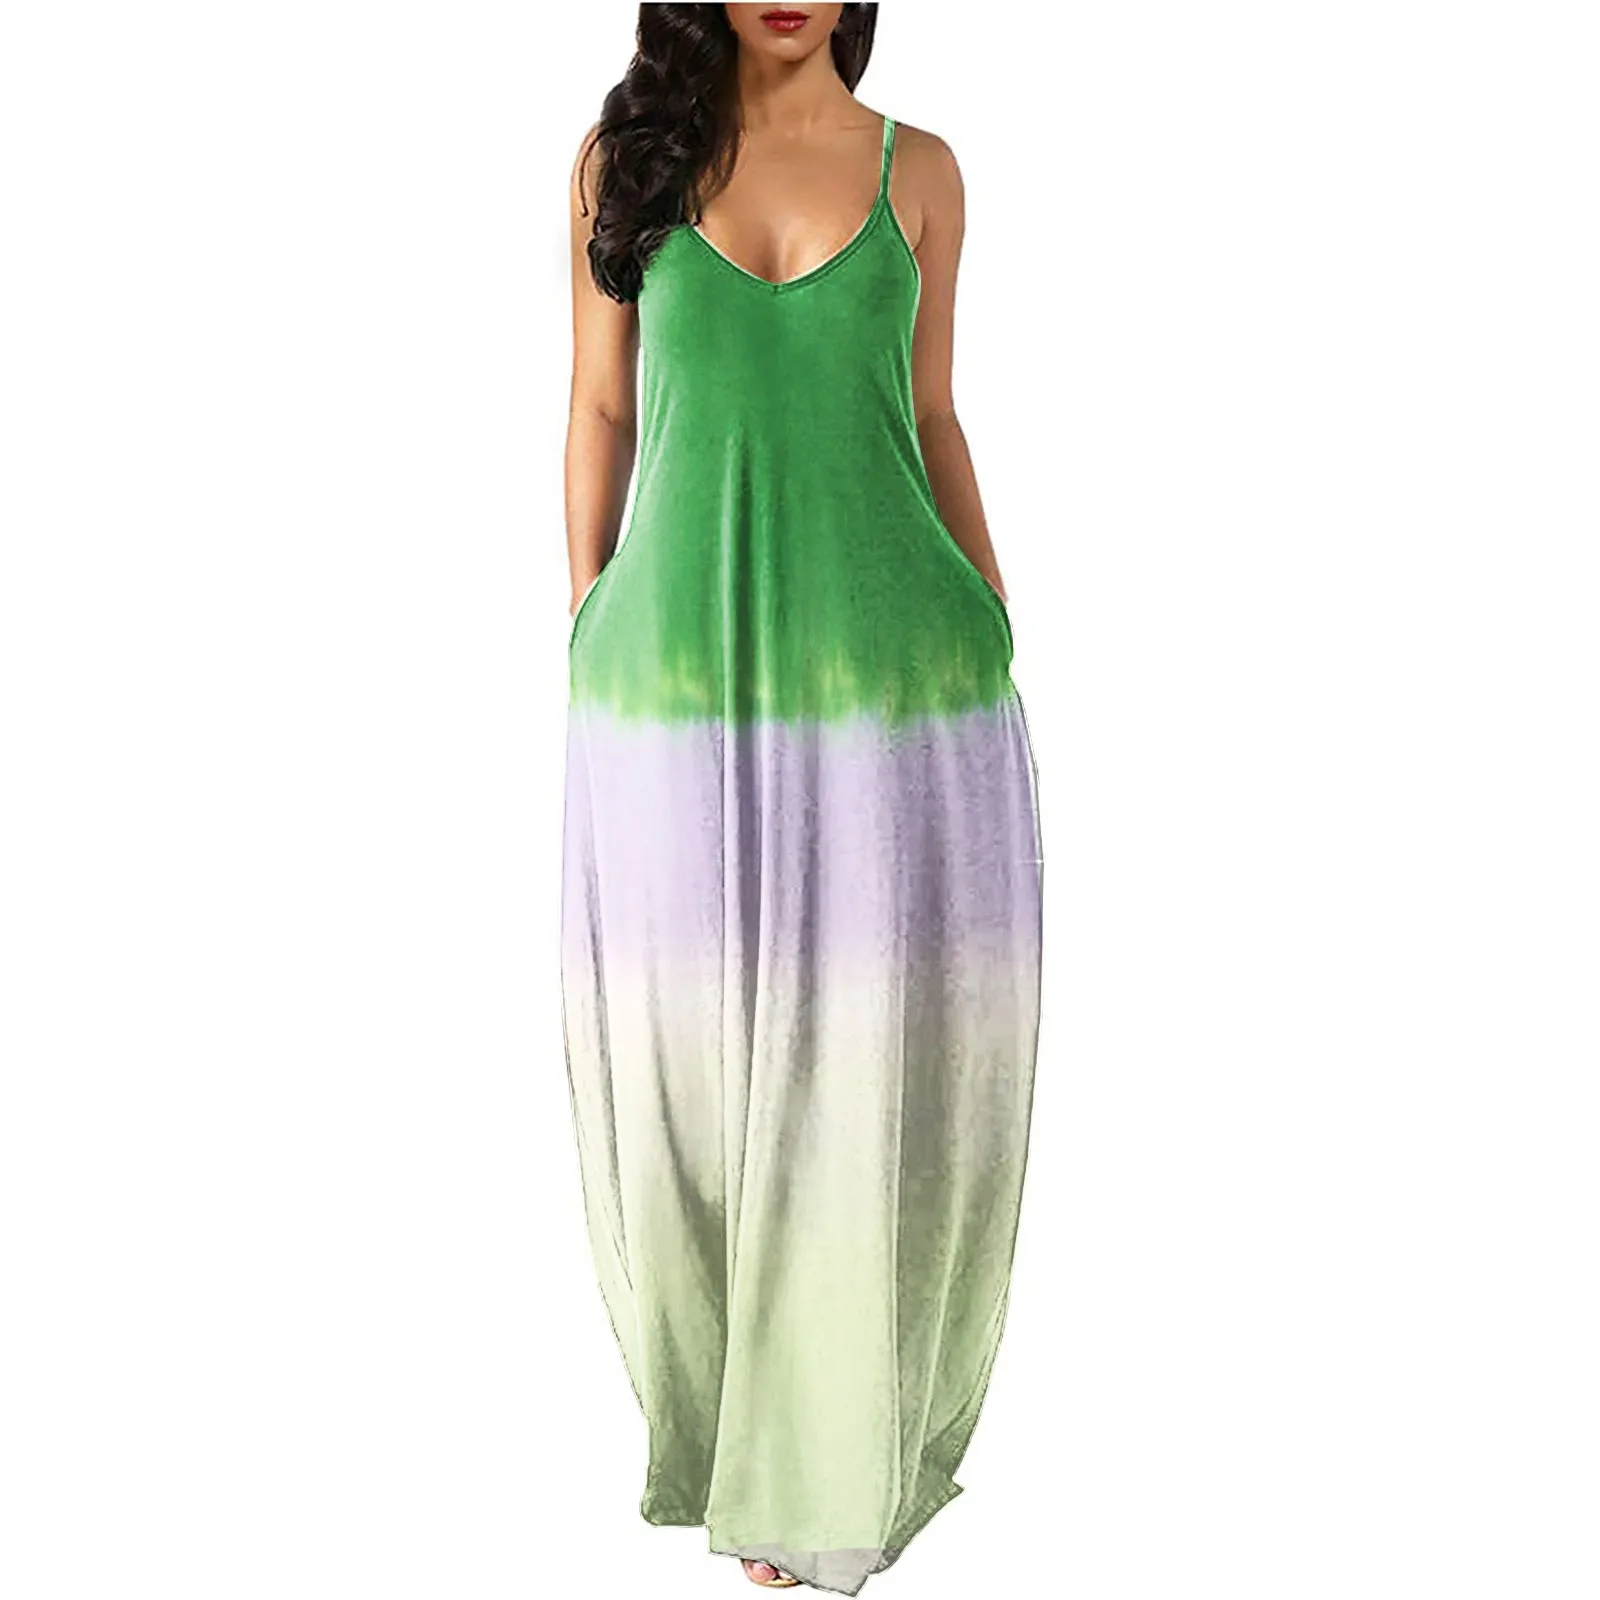 Women's Loose Sleeveless Long Dress - Very Great Deals